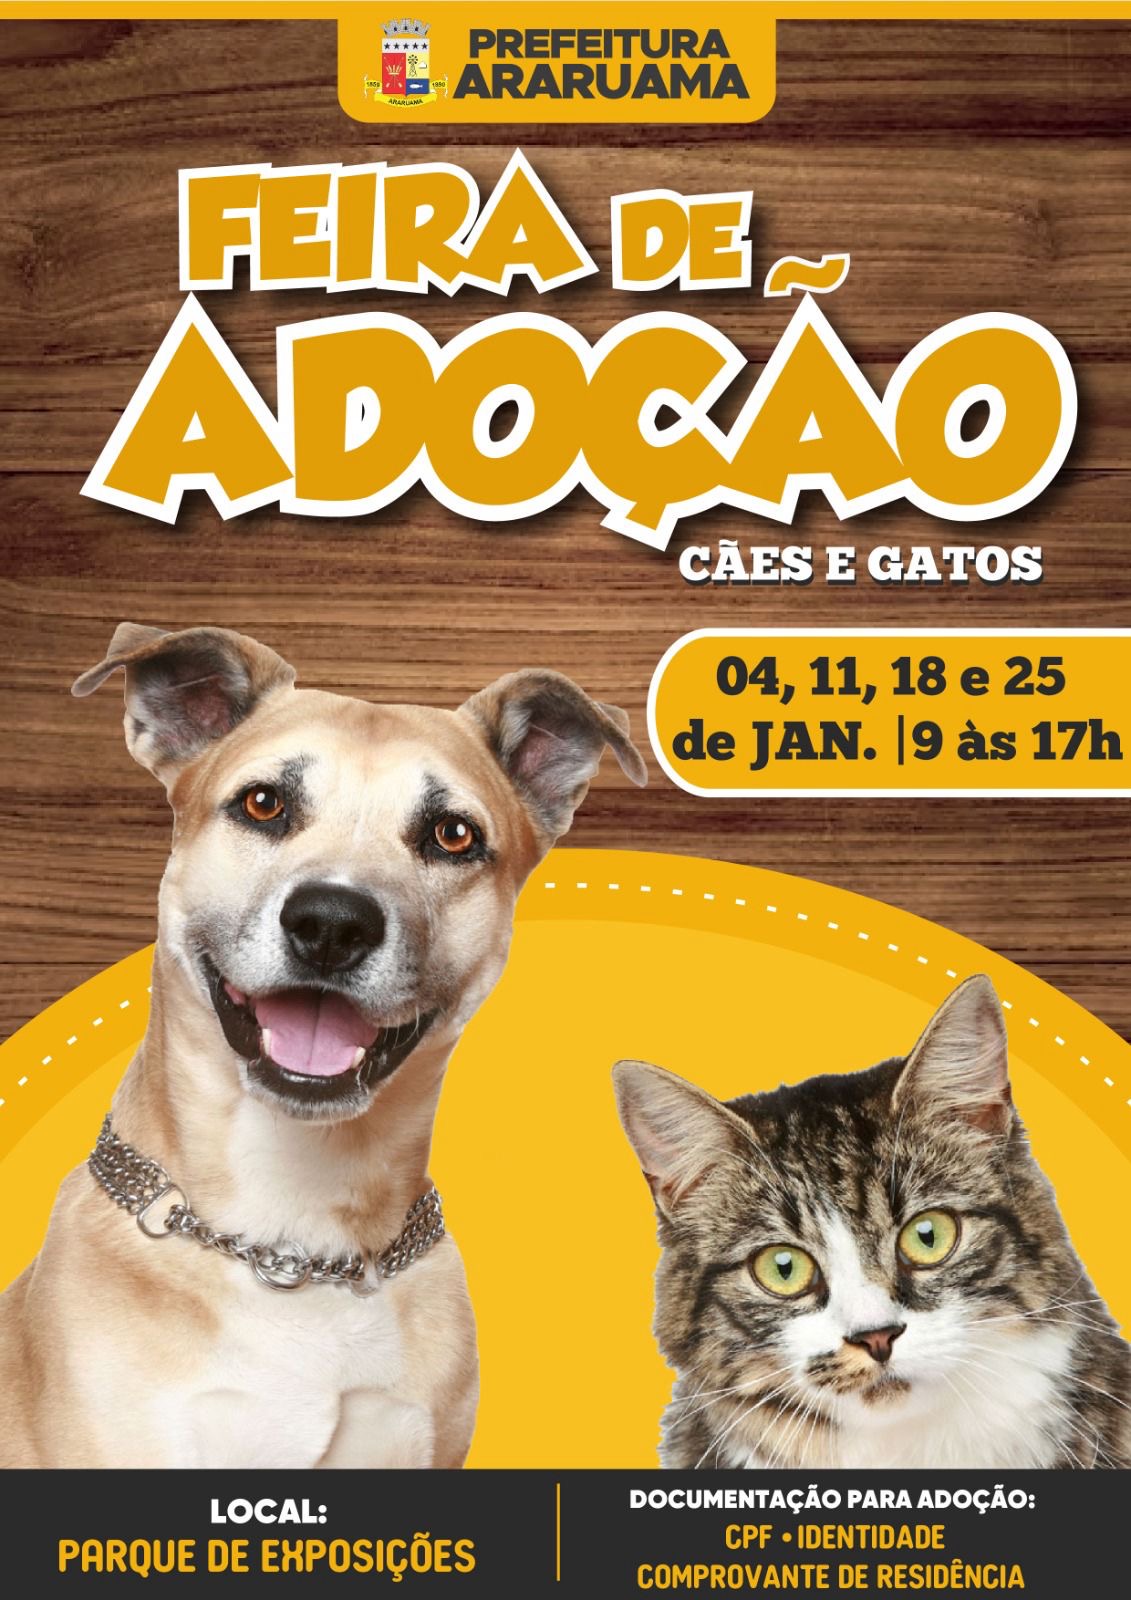 Prefeitura de Araruama vai realizar a Feira de Adoção de Animais no mês de janeiro no Parque de Exposições